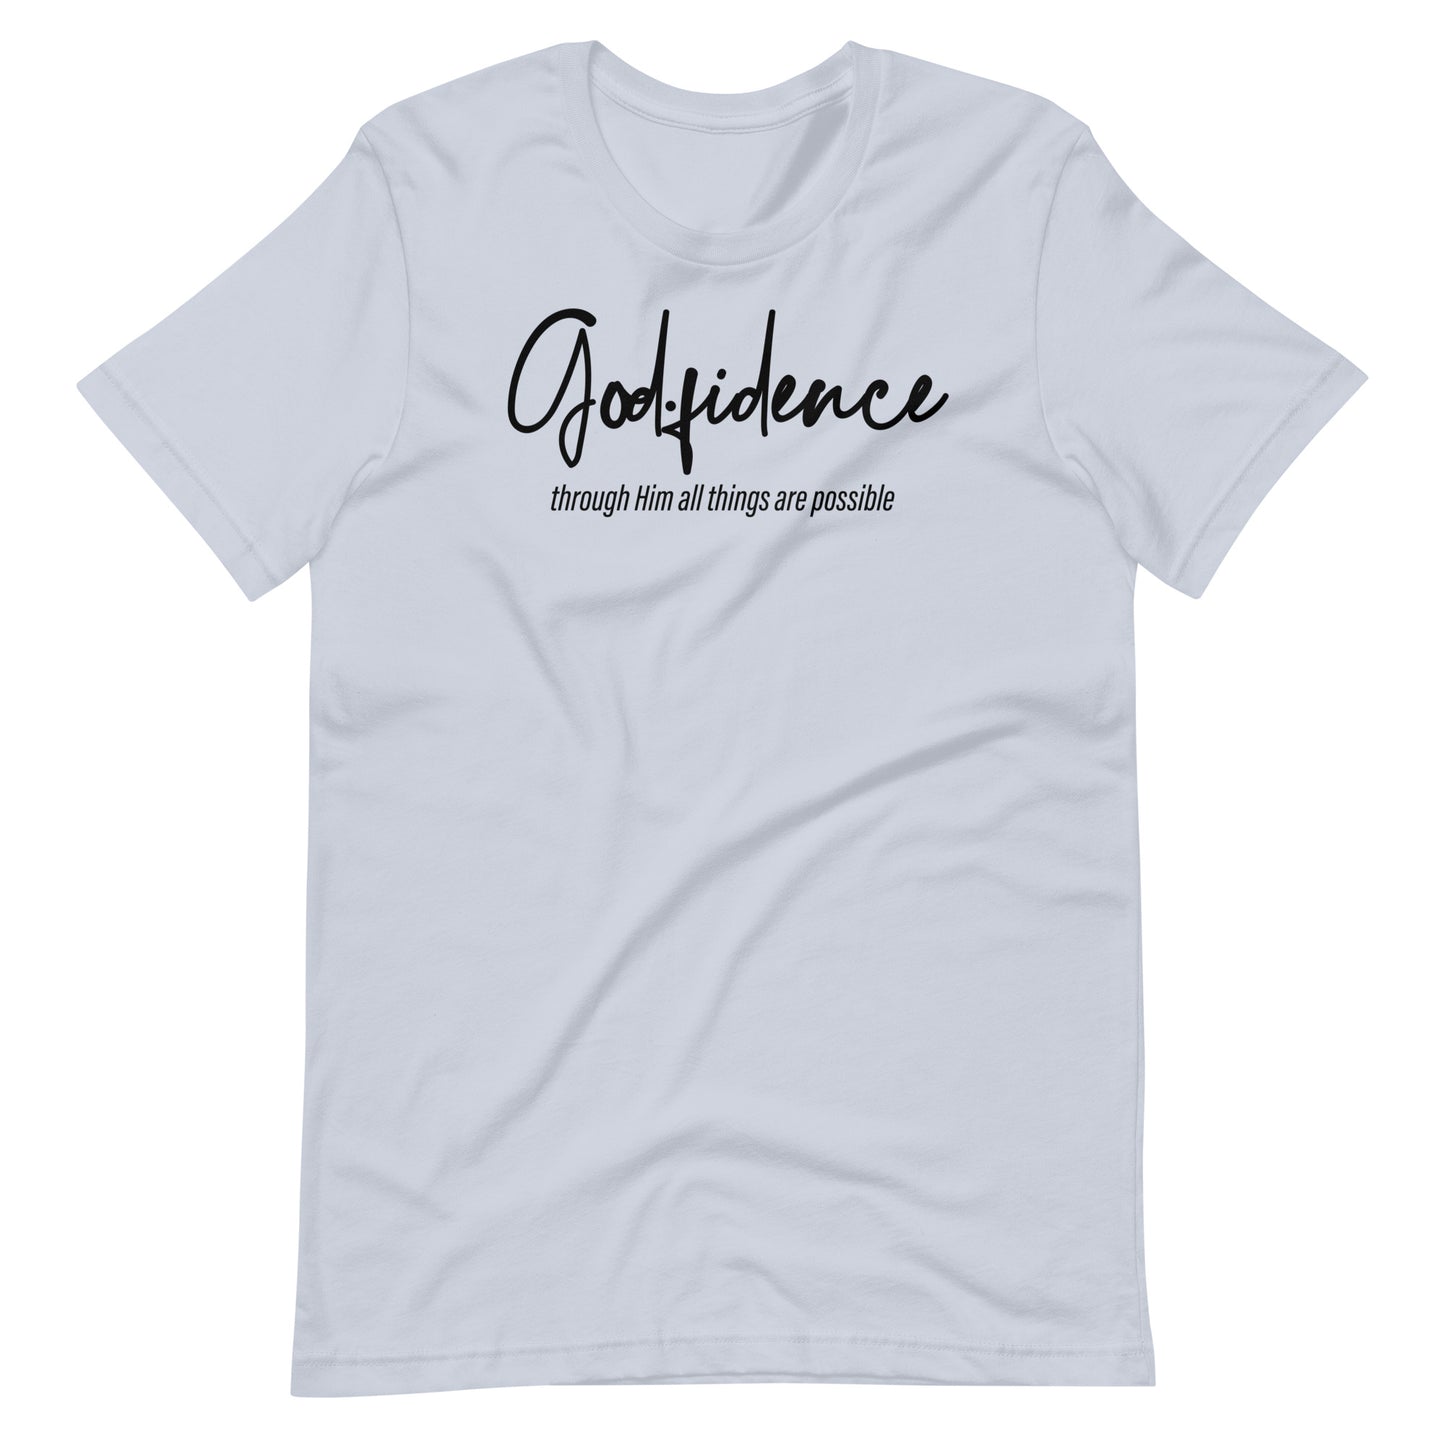 Godfidence Unisex t-shirt